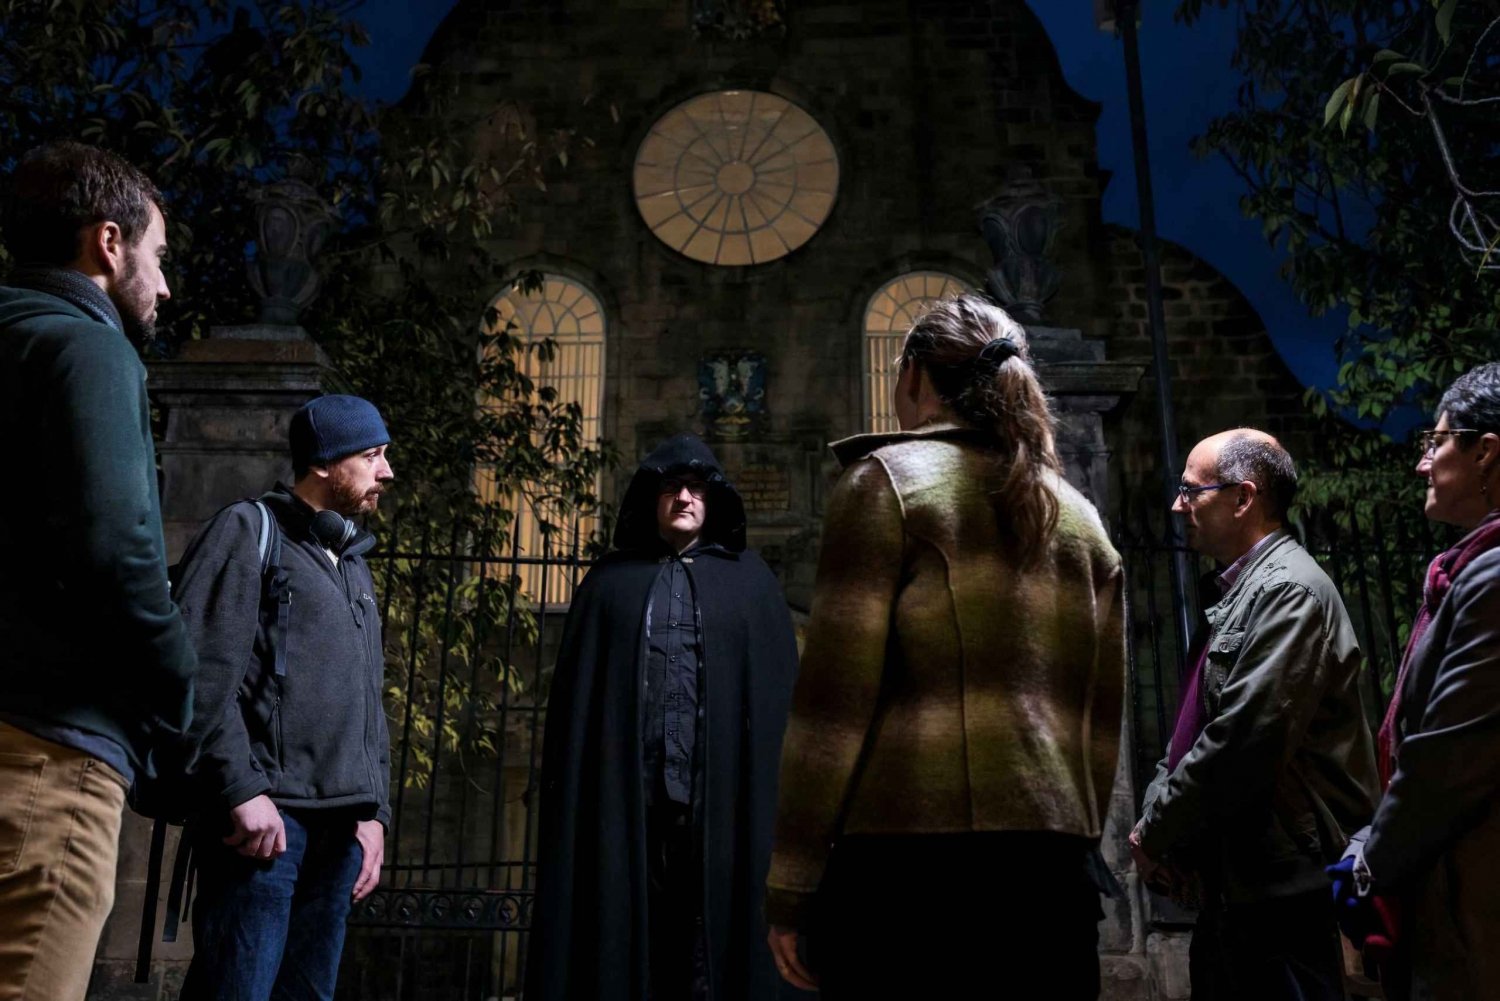 Edimburgo: Visita nocturna a las Bóvedas Subterráneas y al Cementerio